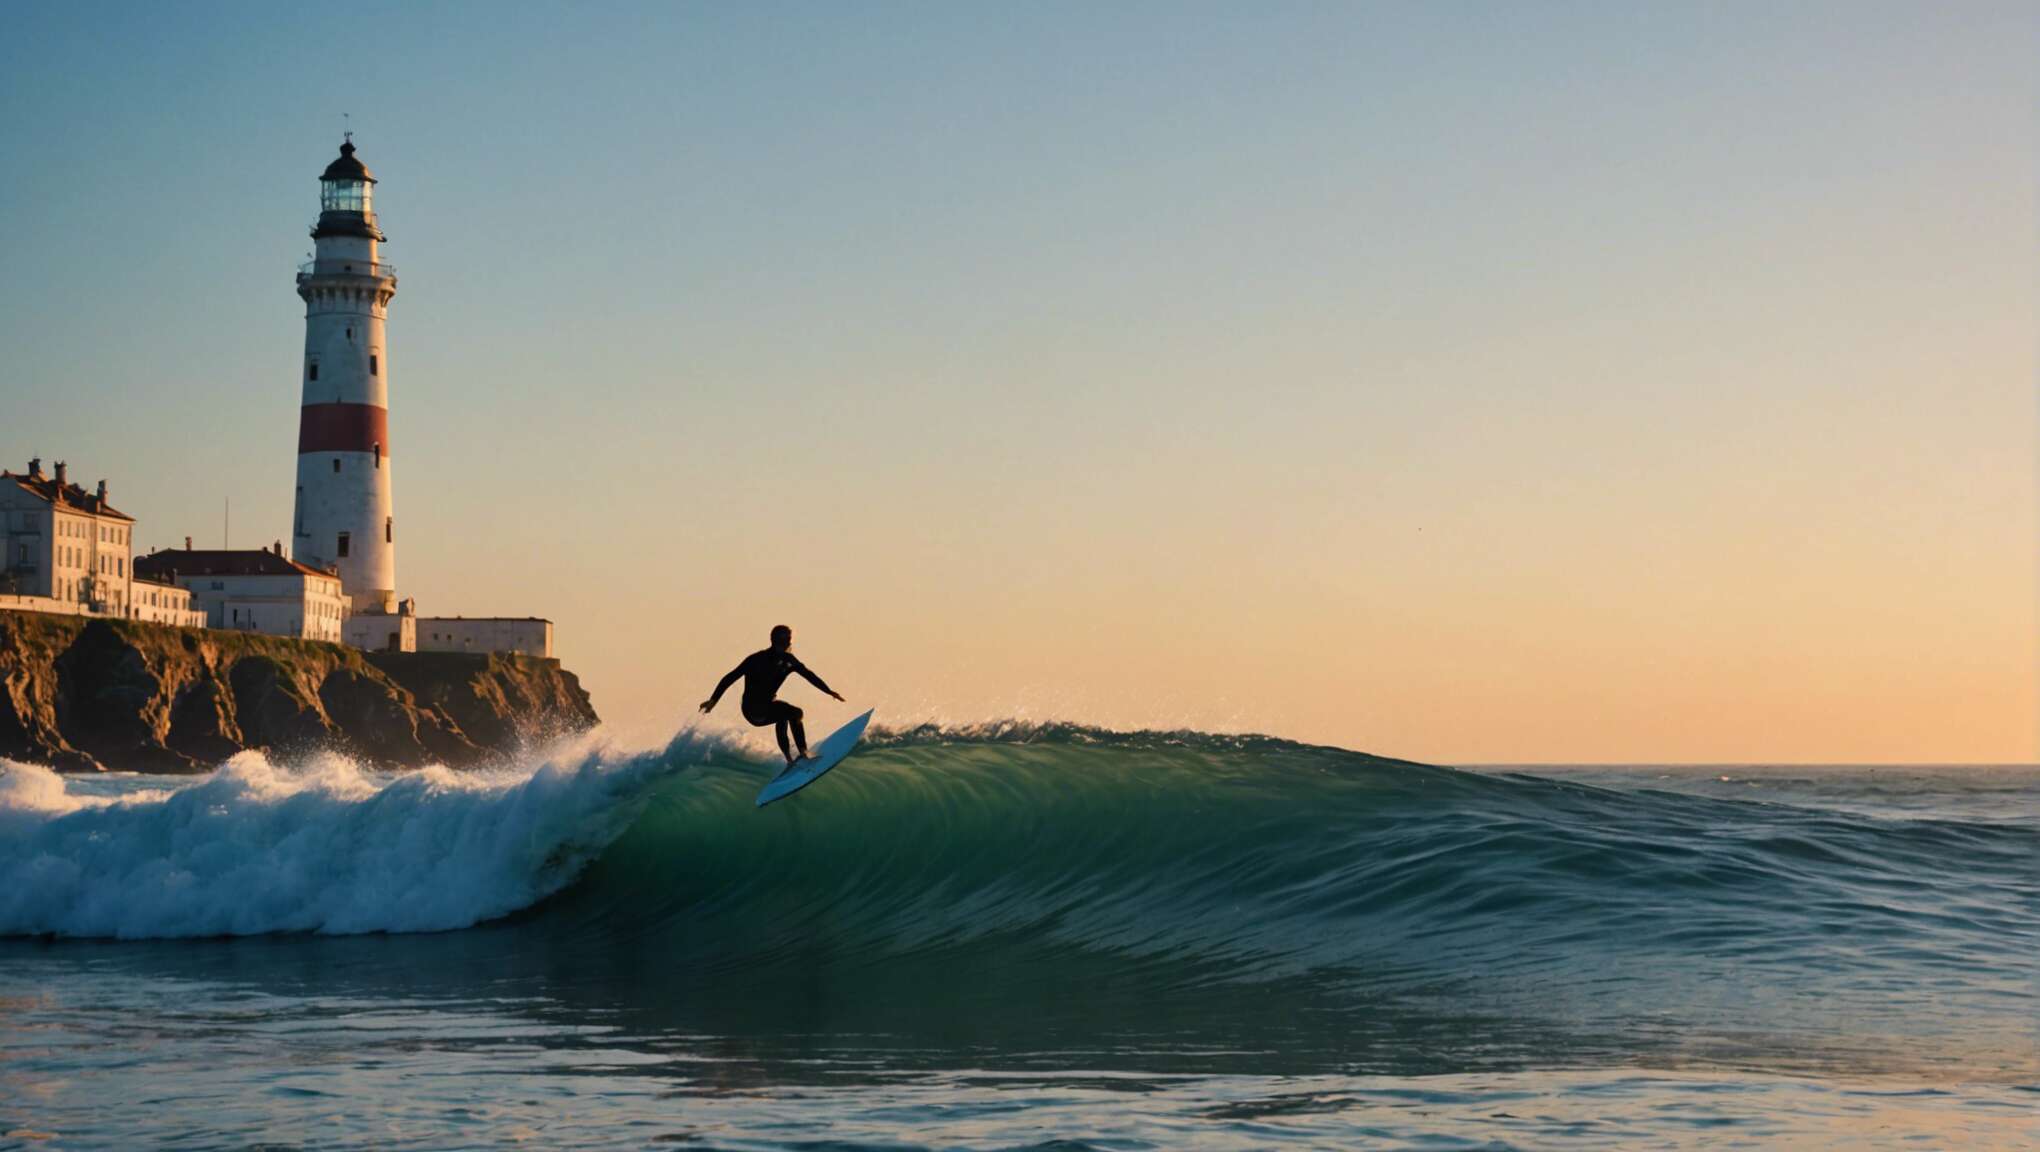 Découverte des joyaux du surf à biarritz : entre tradition et modernité